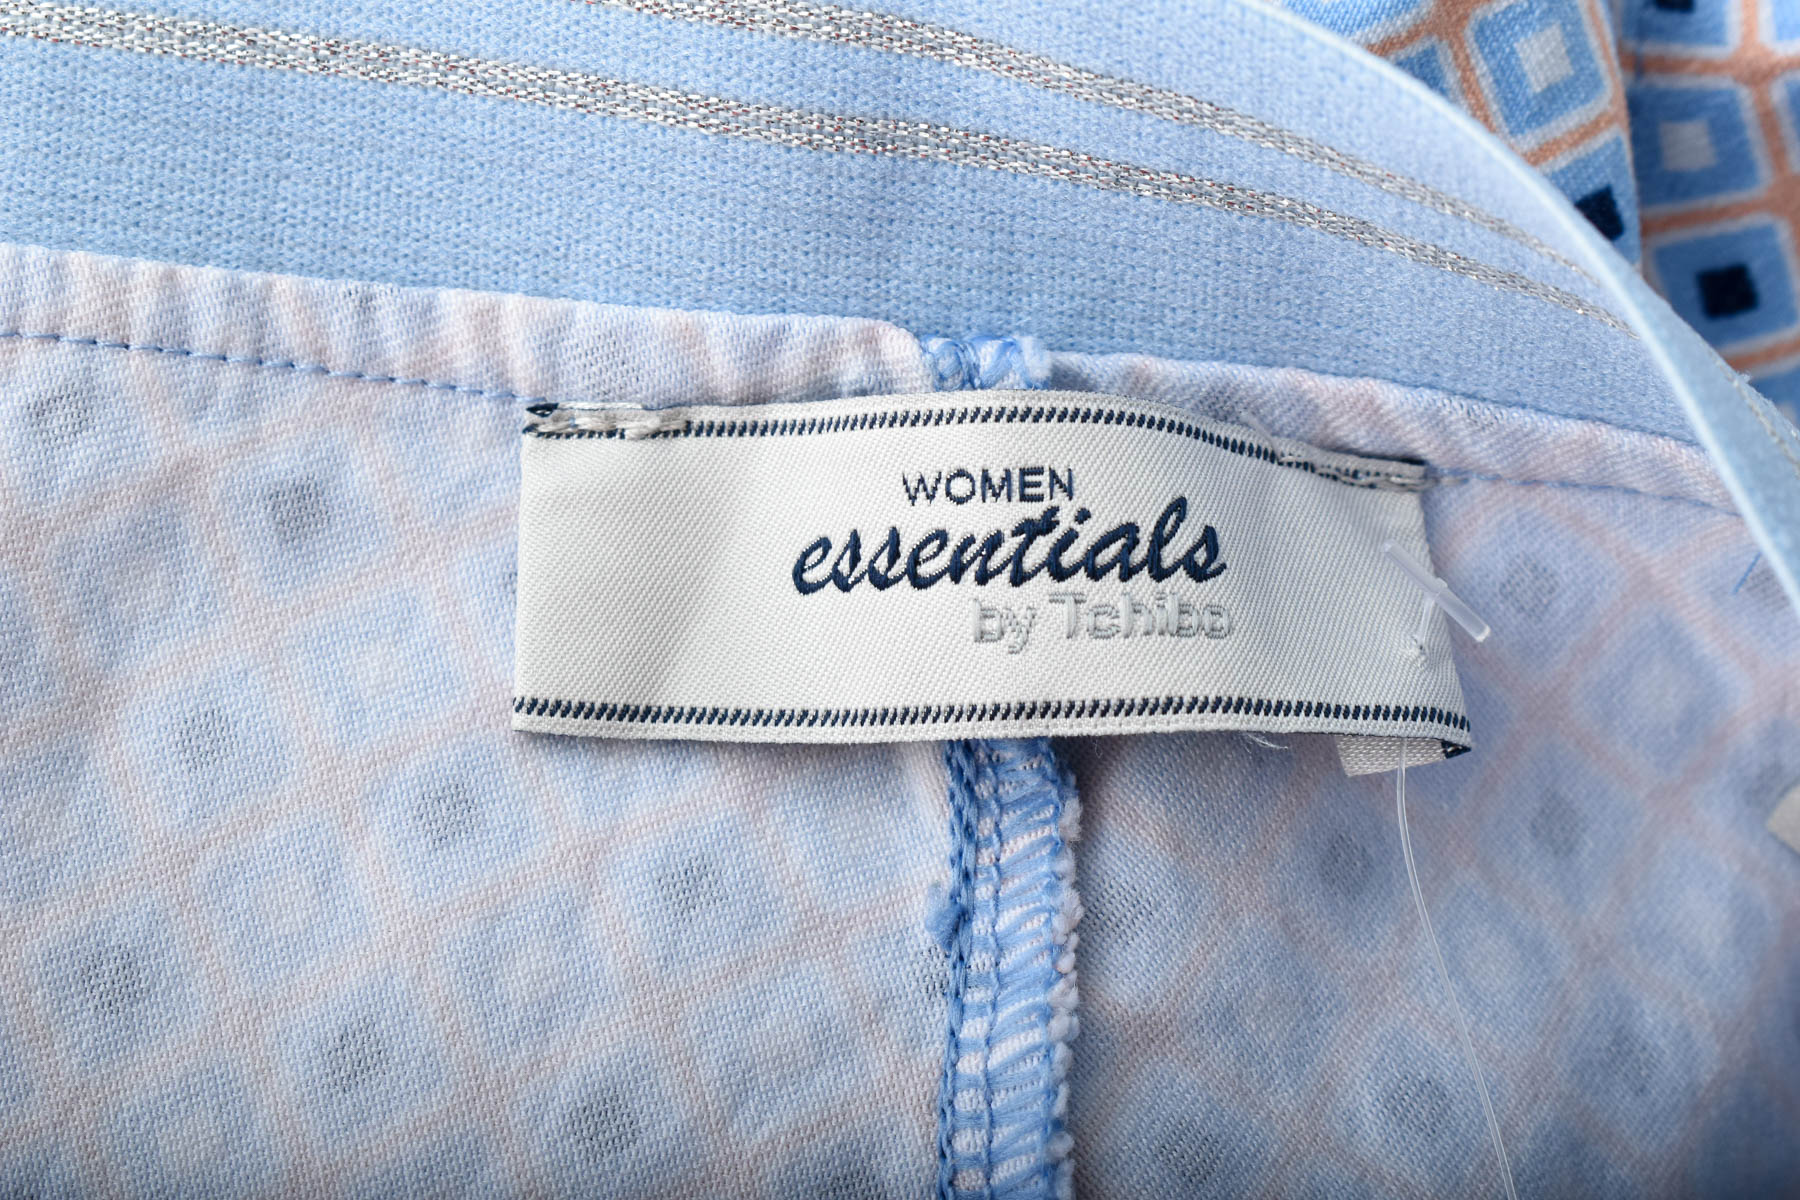 Spodnie damskie - WOMEN essentials by Tchibo - 2